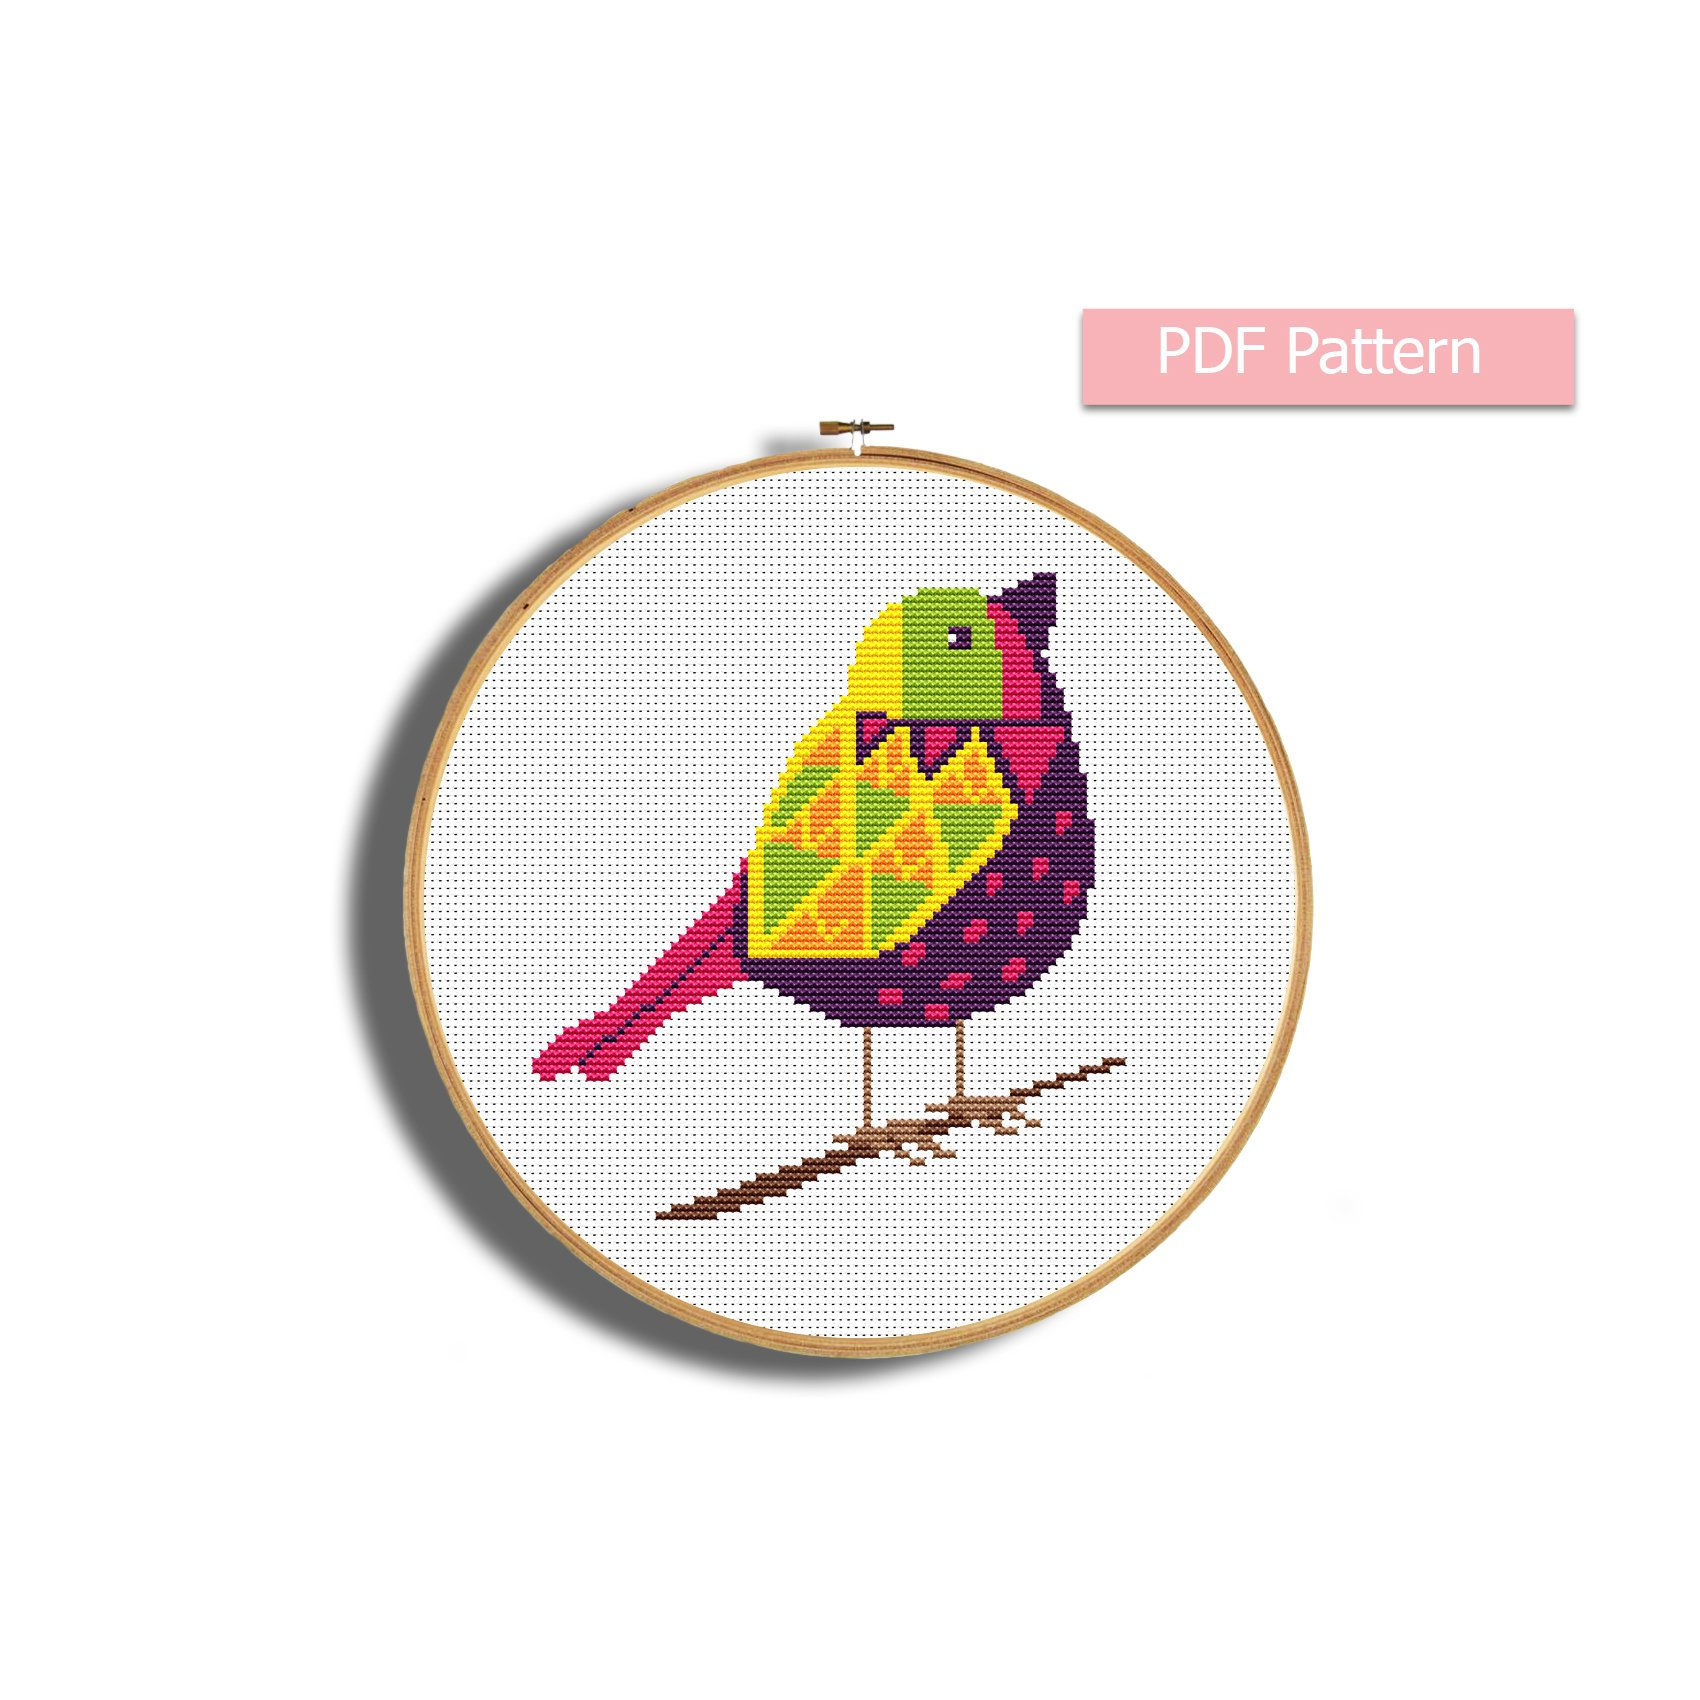 Bird Embroidery Patterns Bird Cross Stitch Pattern Modern Cross Stitch Chart Bird Embroidery Easy Stitching Animals Pattern Pdf Fauna Embroidery Counted Pd